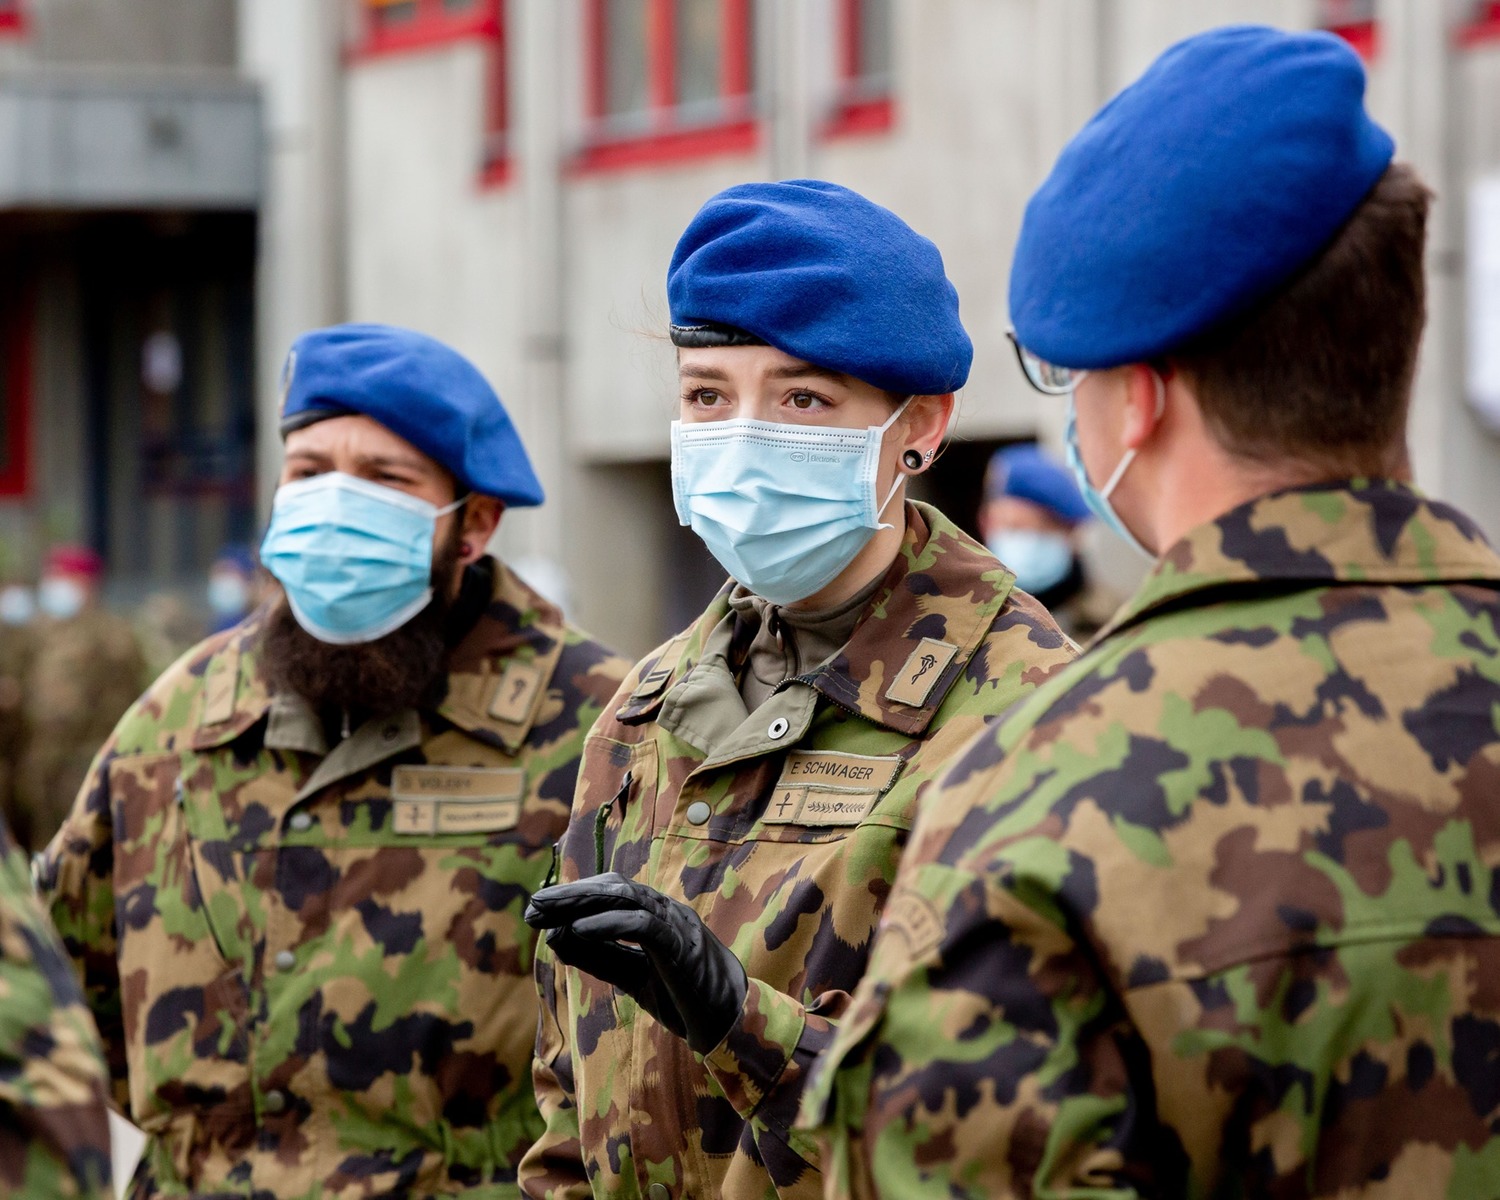 終於准許穿女性內衣了! 瑞士女國防部長下令 更改部隊服裝規定